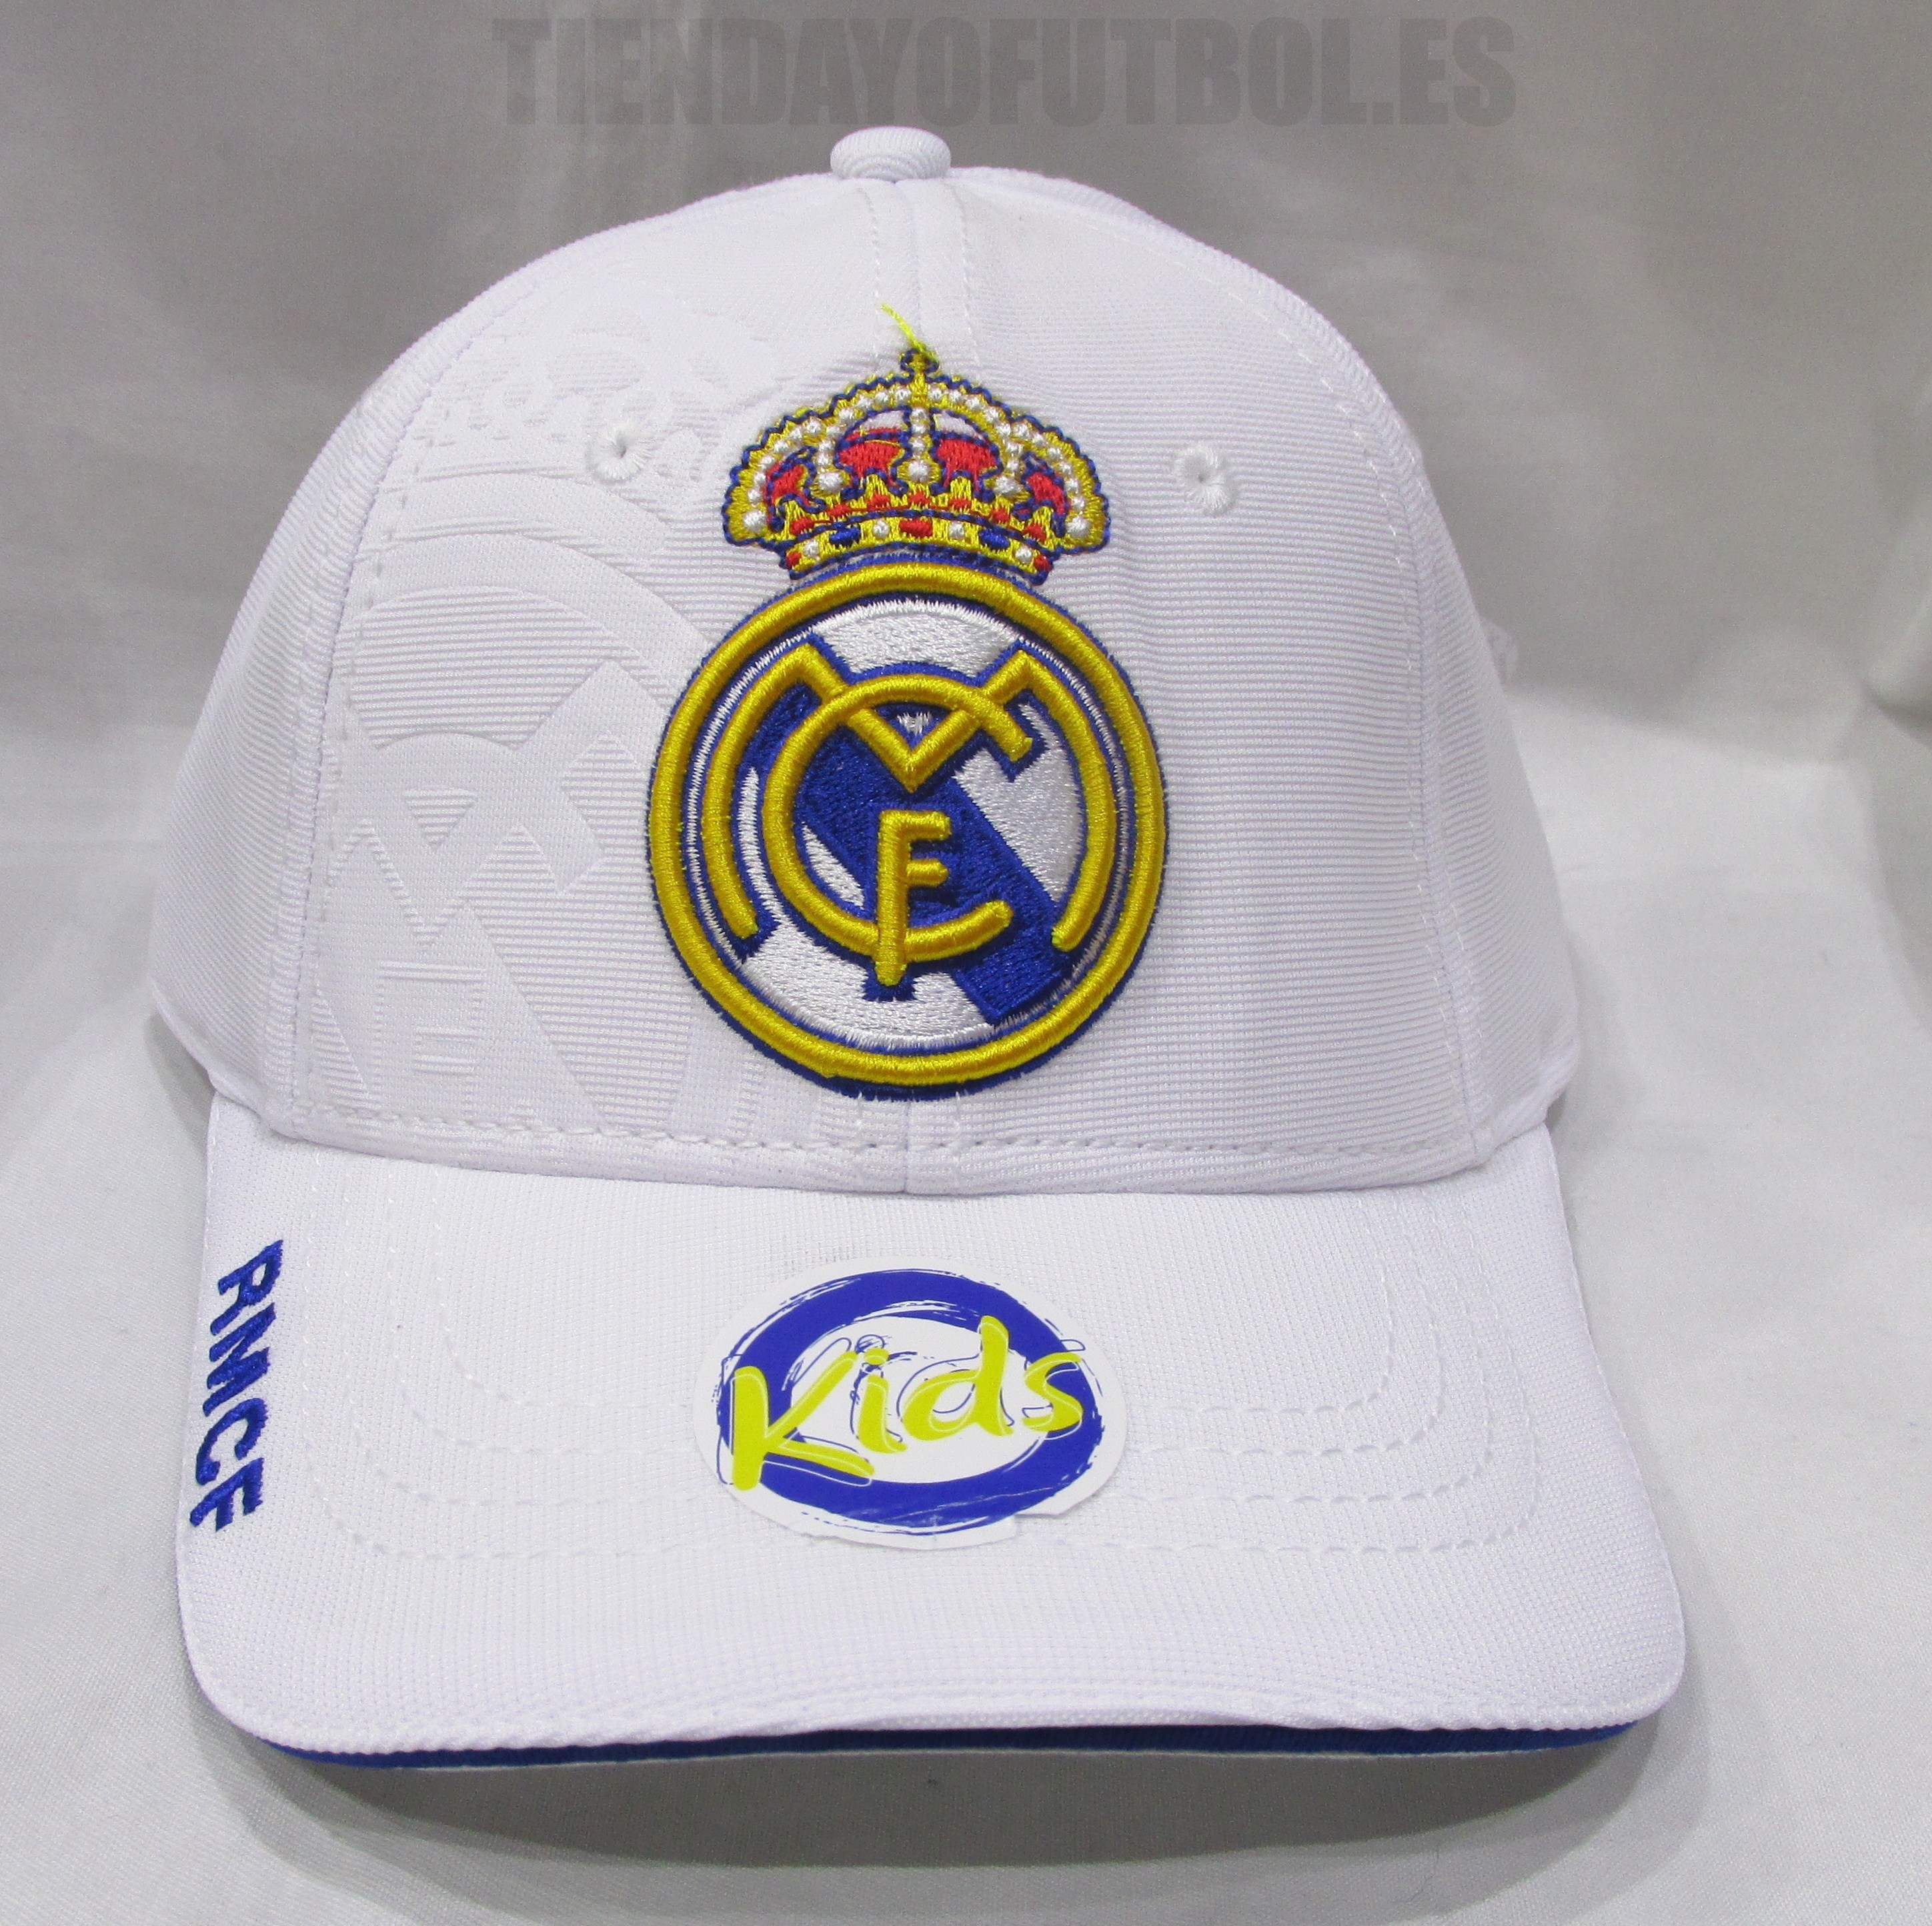 Gorra de partidario del Real Madrid - Blanco - Niños